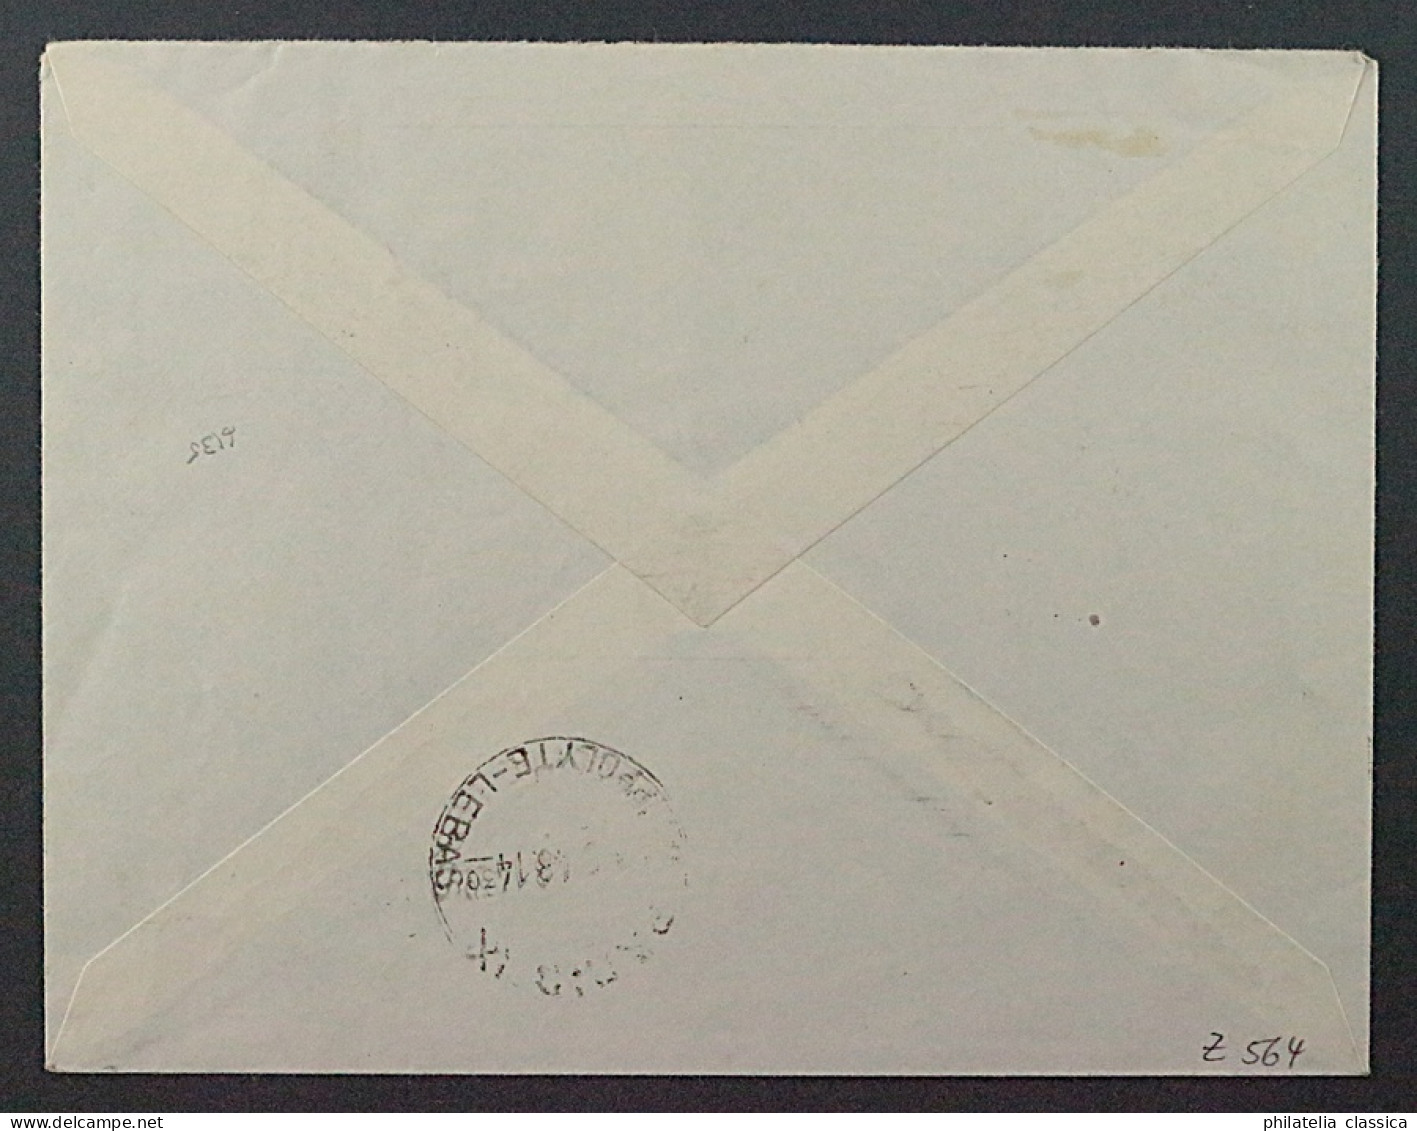 1948, BIZONE JEIA Flugpostzulassungsmarke Auf Luftpost-Brief, Geprüft 400,-€ - Lettres & Documents